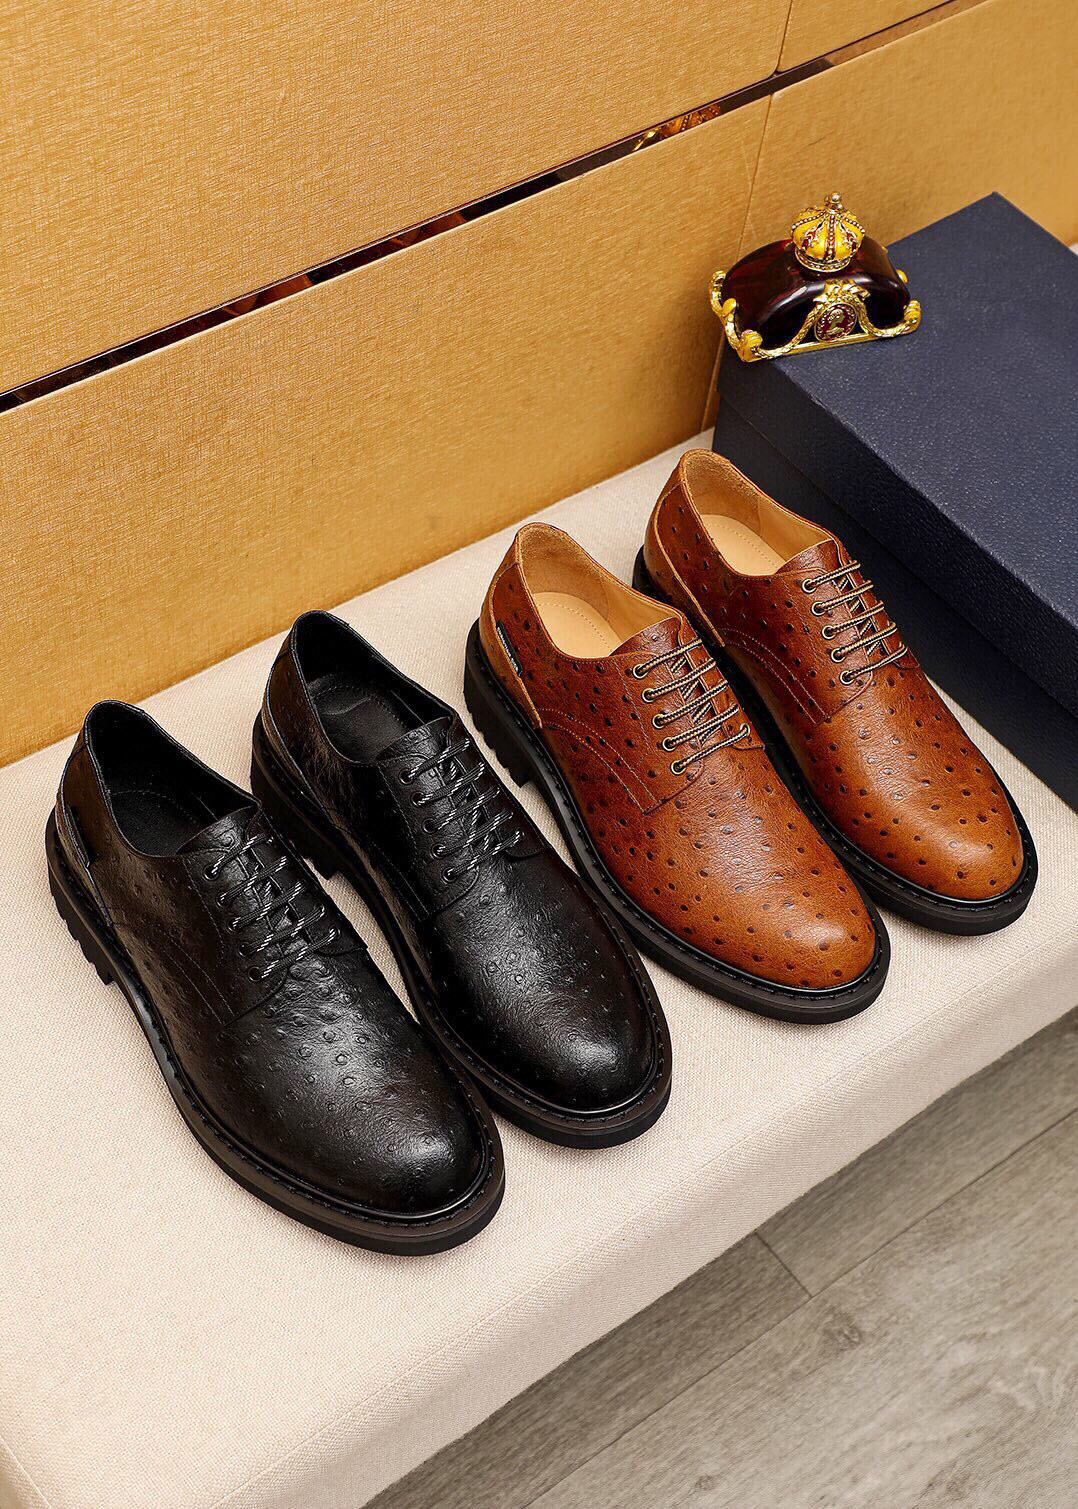 Zapatos de vestir para hombre, zapatos planos de cuero genuino de alta calidad, zapatos Oxford clásicos de negocios para fiesta y boda, talla 38-45, novedad de 2023